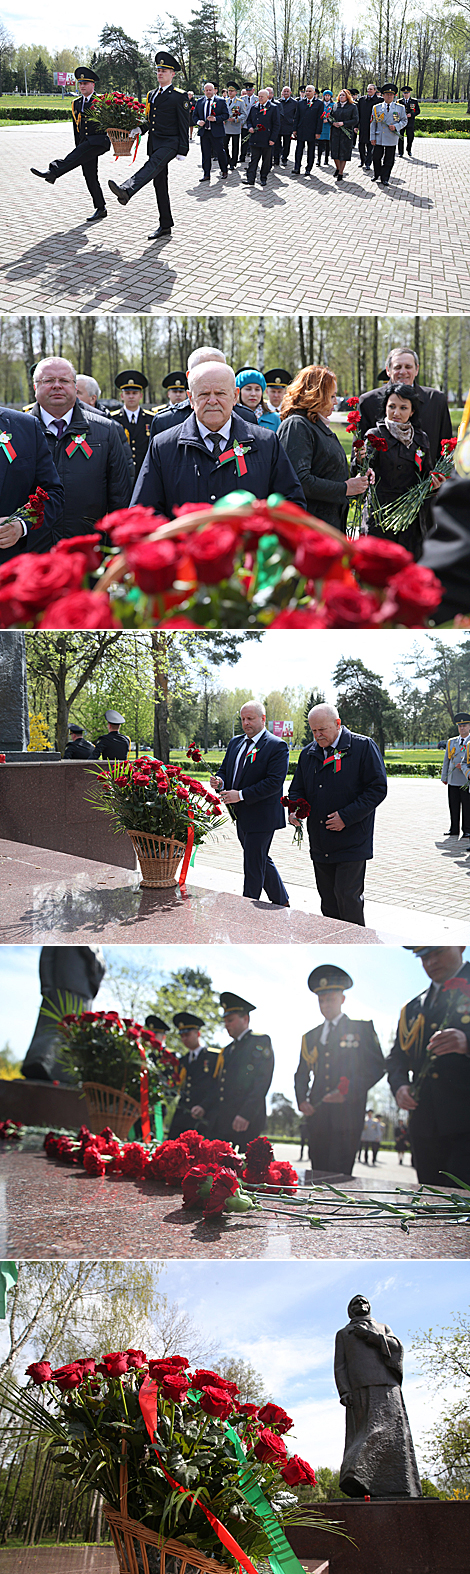 Flower ceremony at monument to Soviet patriot mother Anastasia Kupriyanova in Zhodino